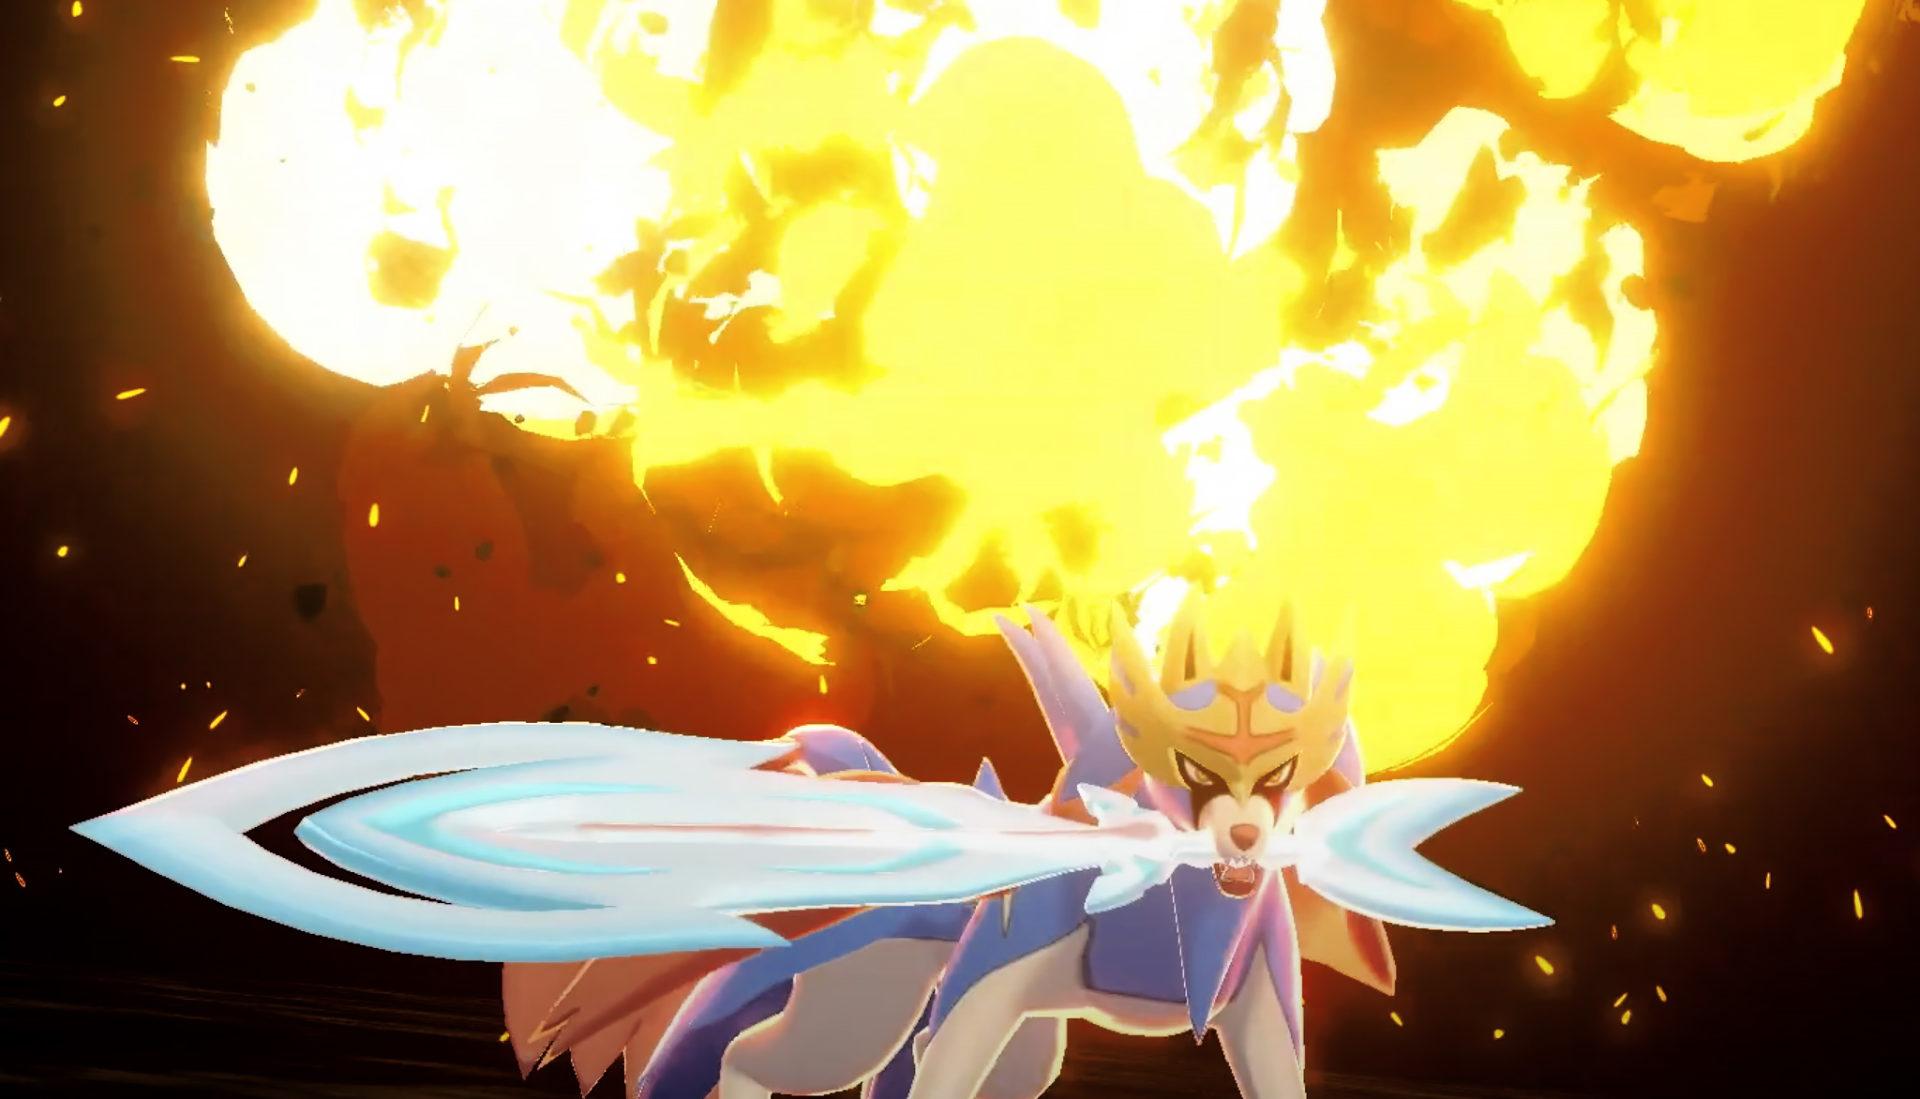 Screenshot of Pokemon Sword & Shield Legendary Zacian attacking.